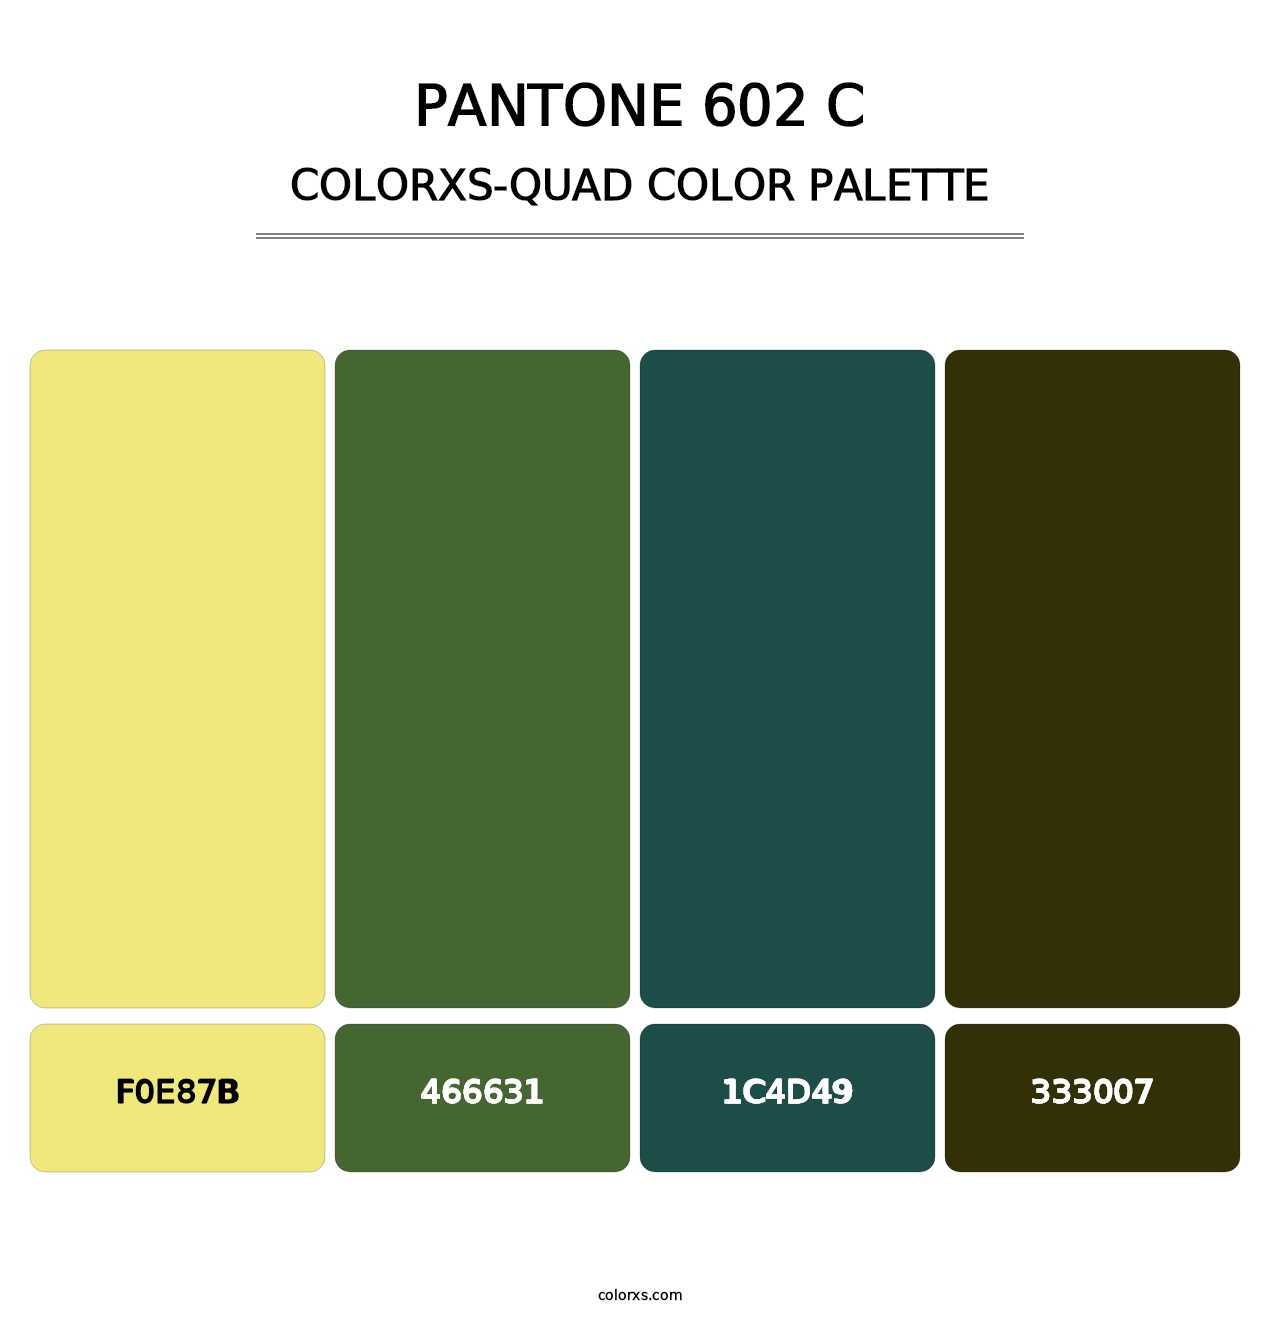 PANTONE 602 C - Colorxs Quad Palette